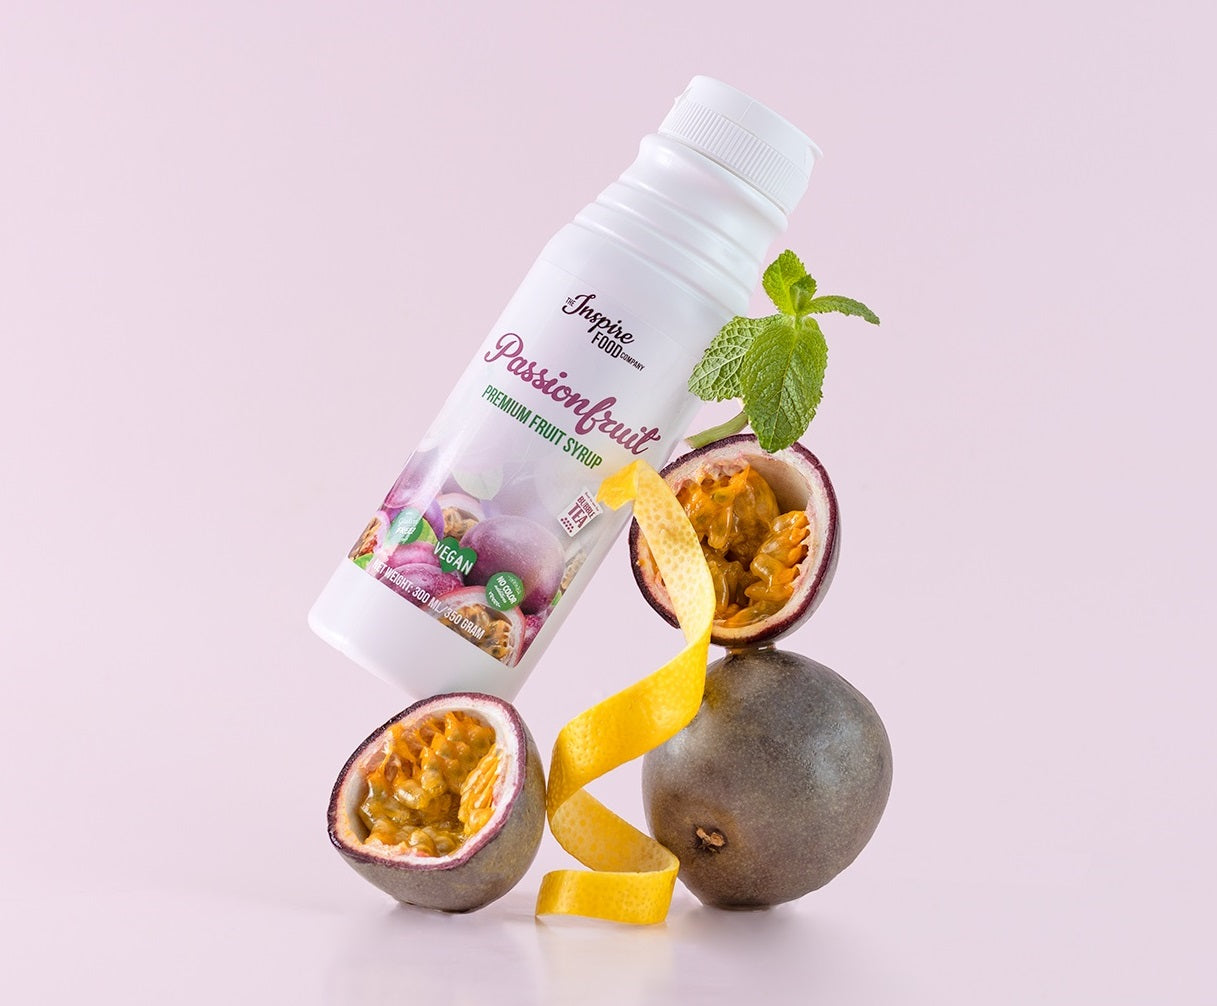 Premium Passionfruit Fruit Syrup - 5 x 2L (no colourants)